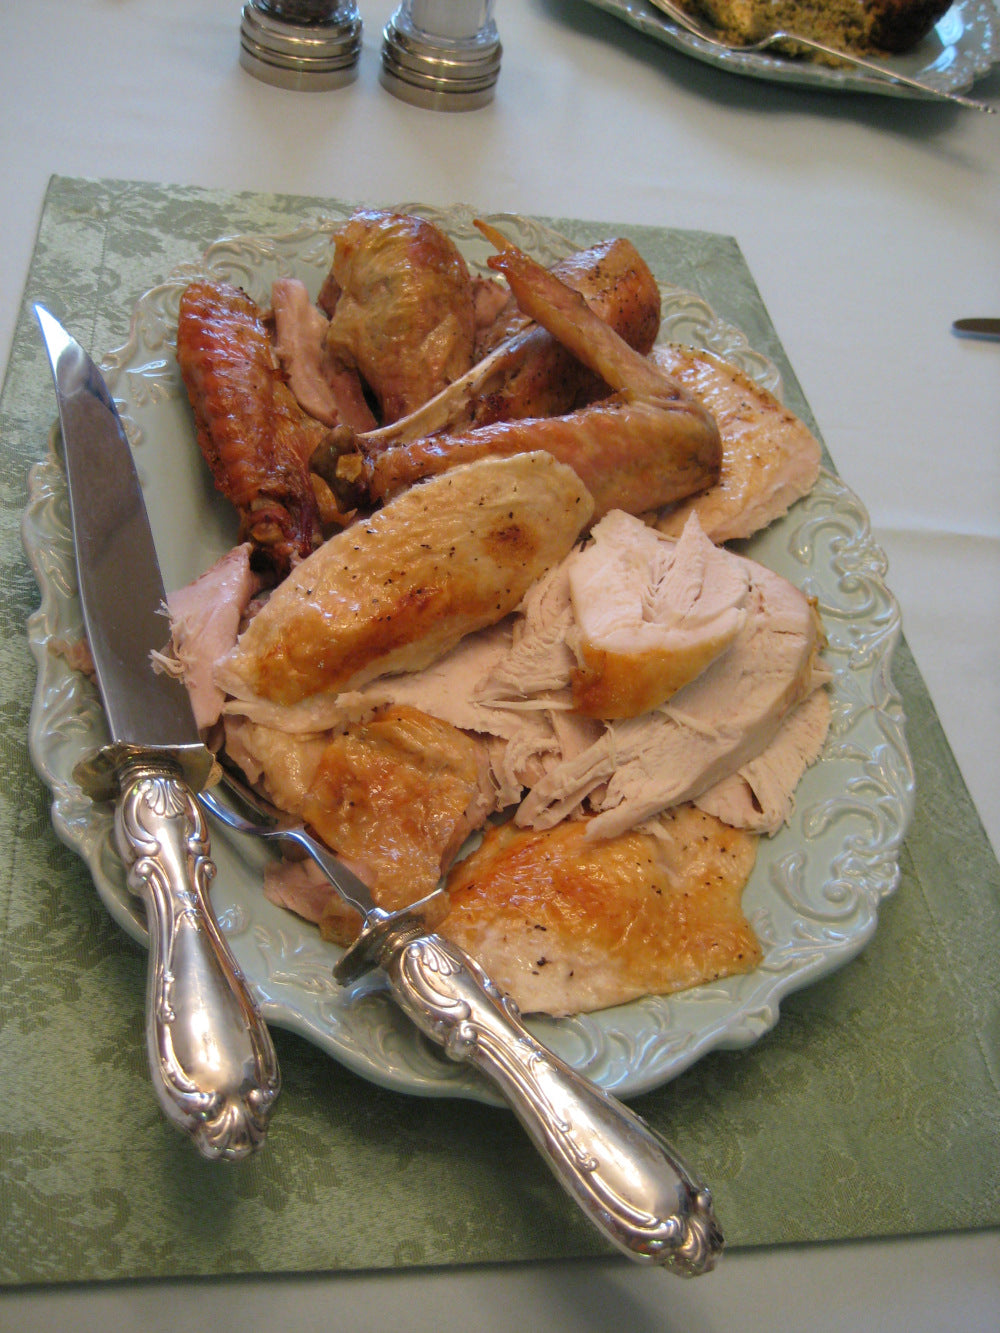 Turkey Day Feast